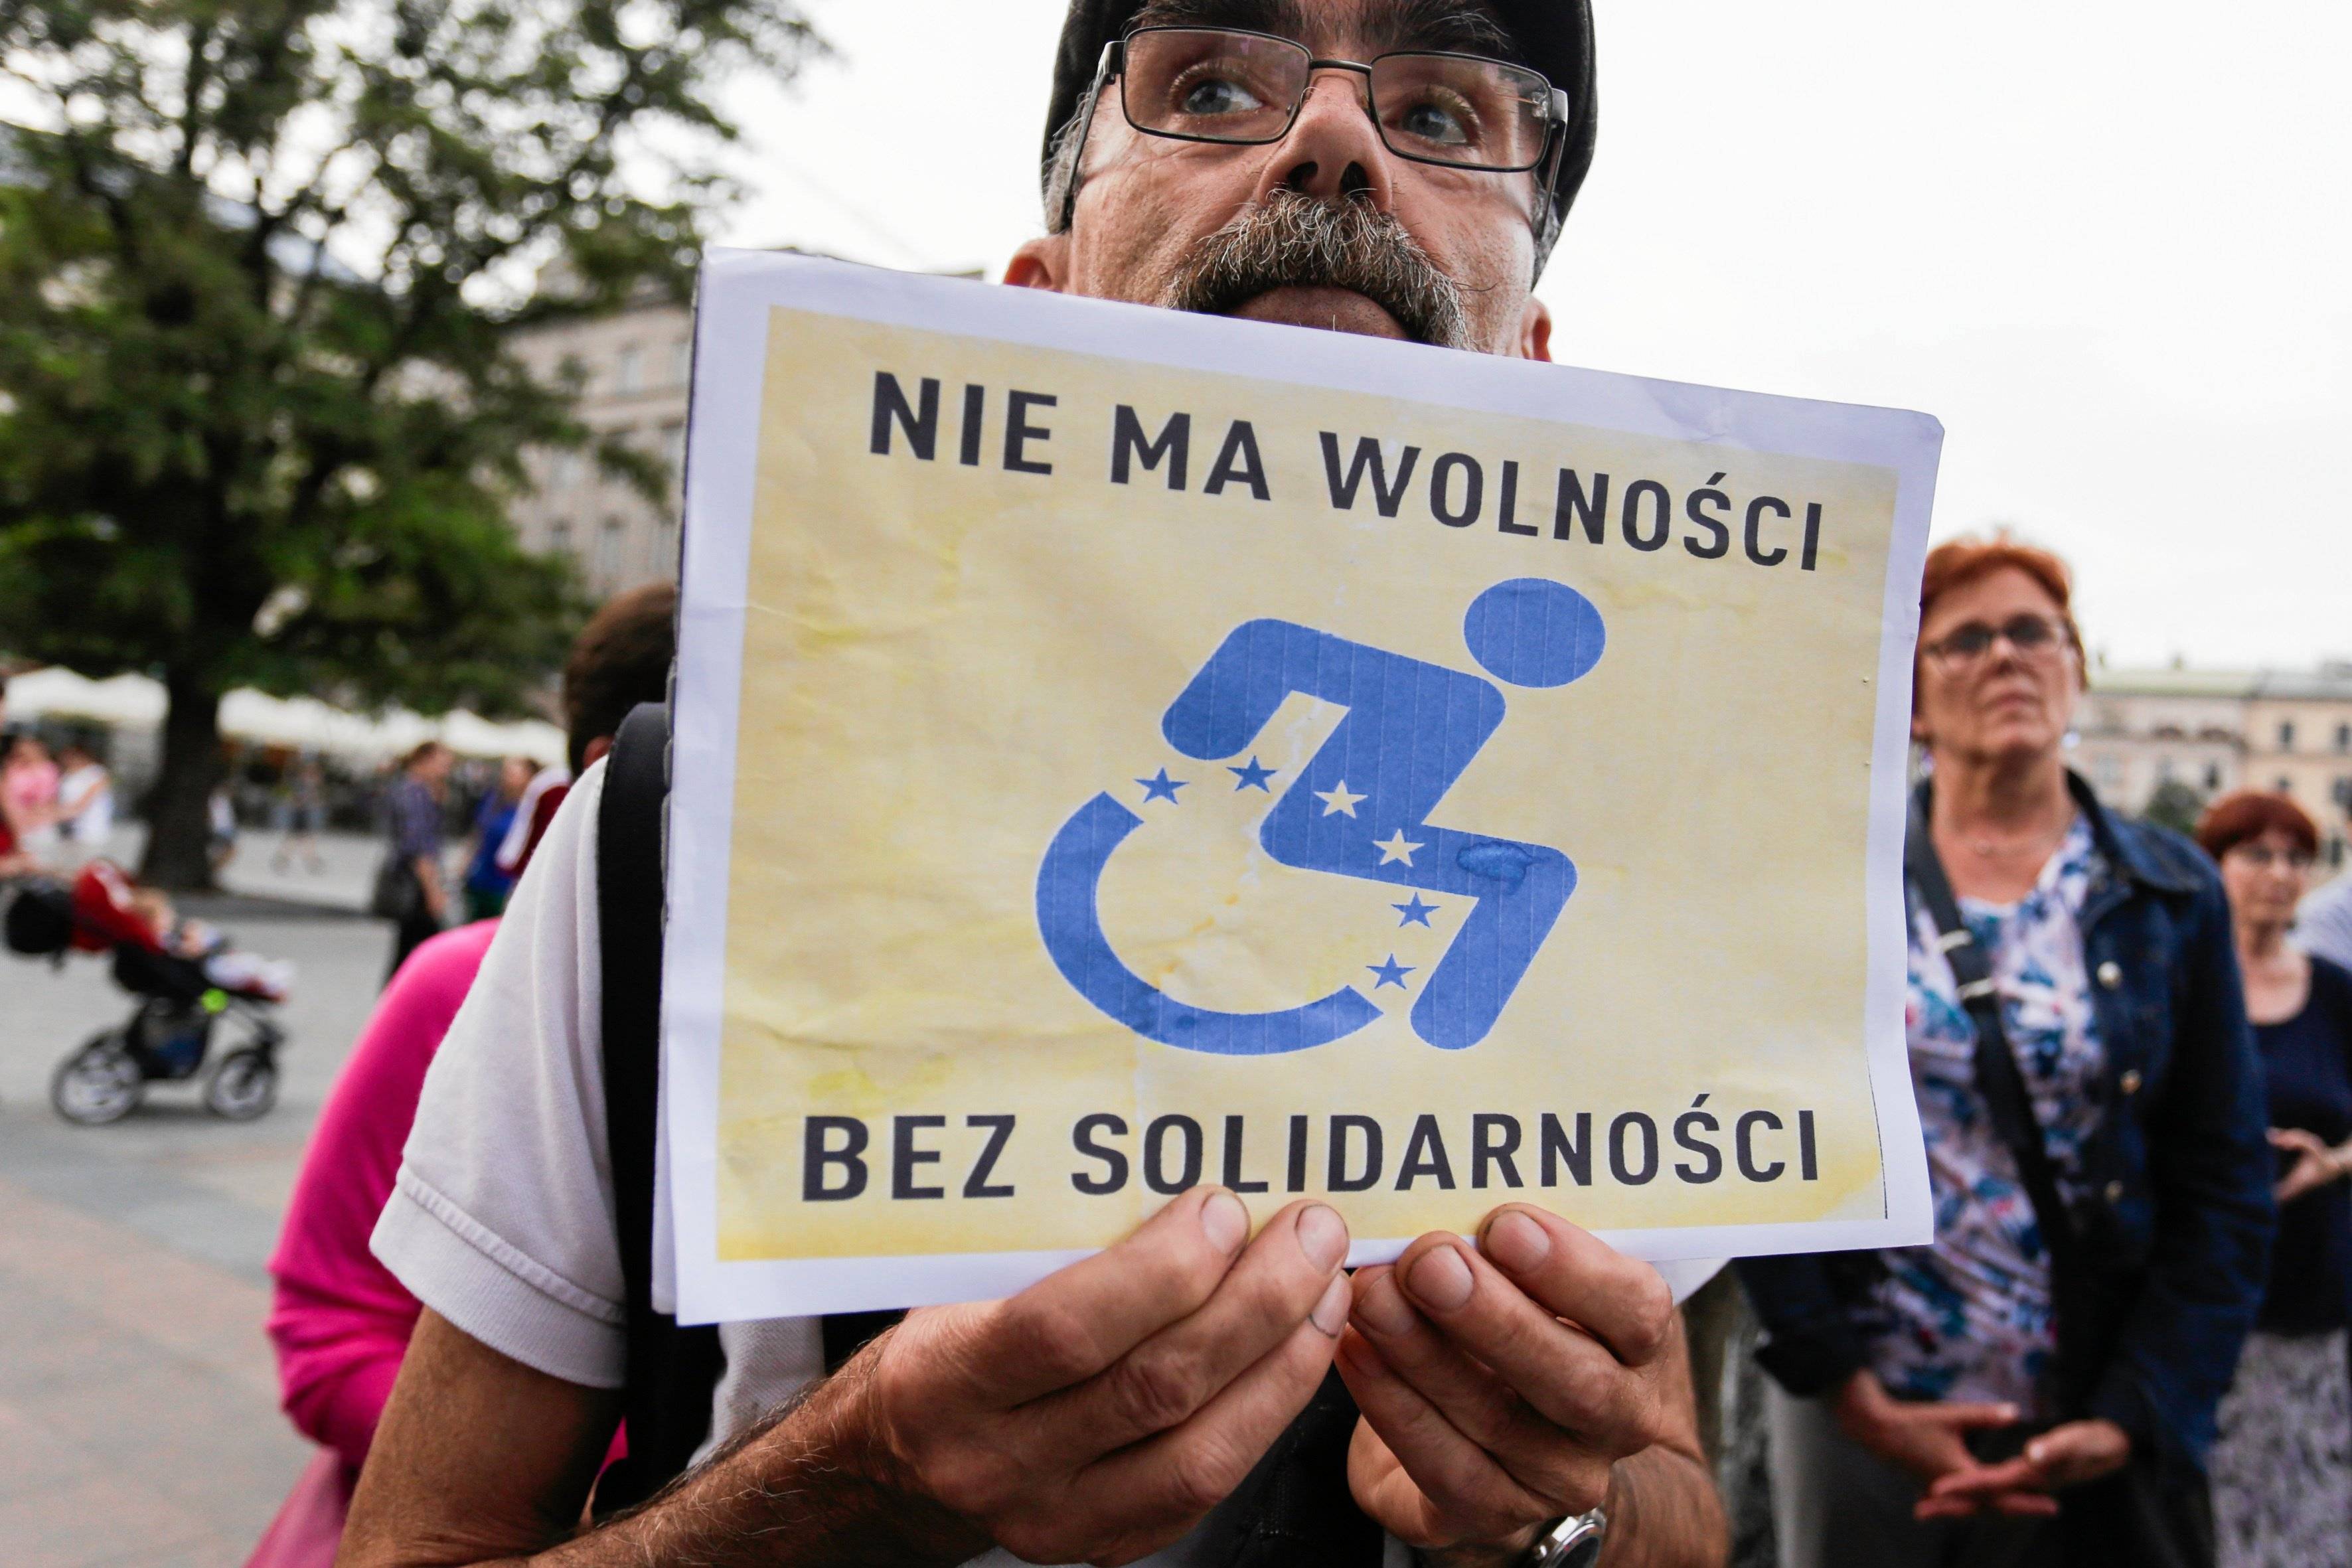 Mężczyzna trzyma plakat z napisem "Nie ma wolności bez solidarności" i rysunkiem wózka inwalidzkiego